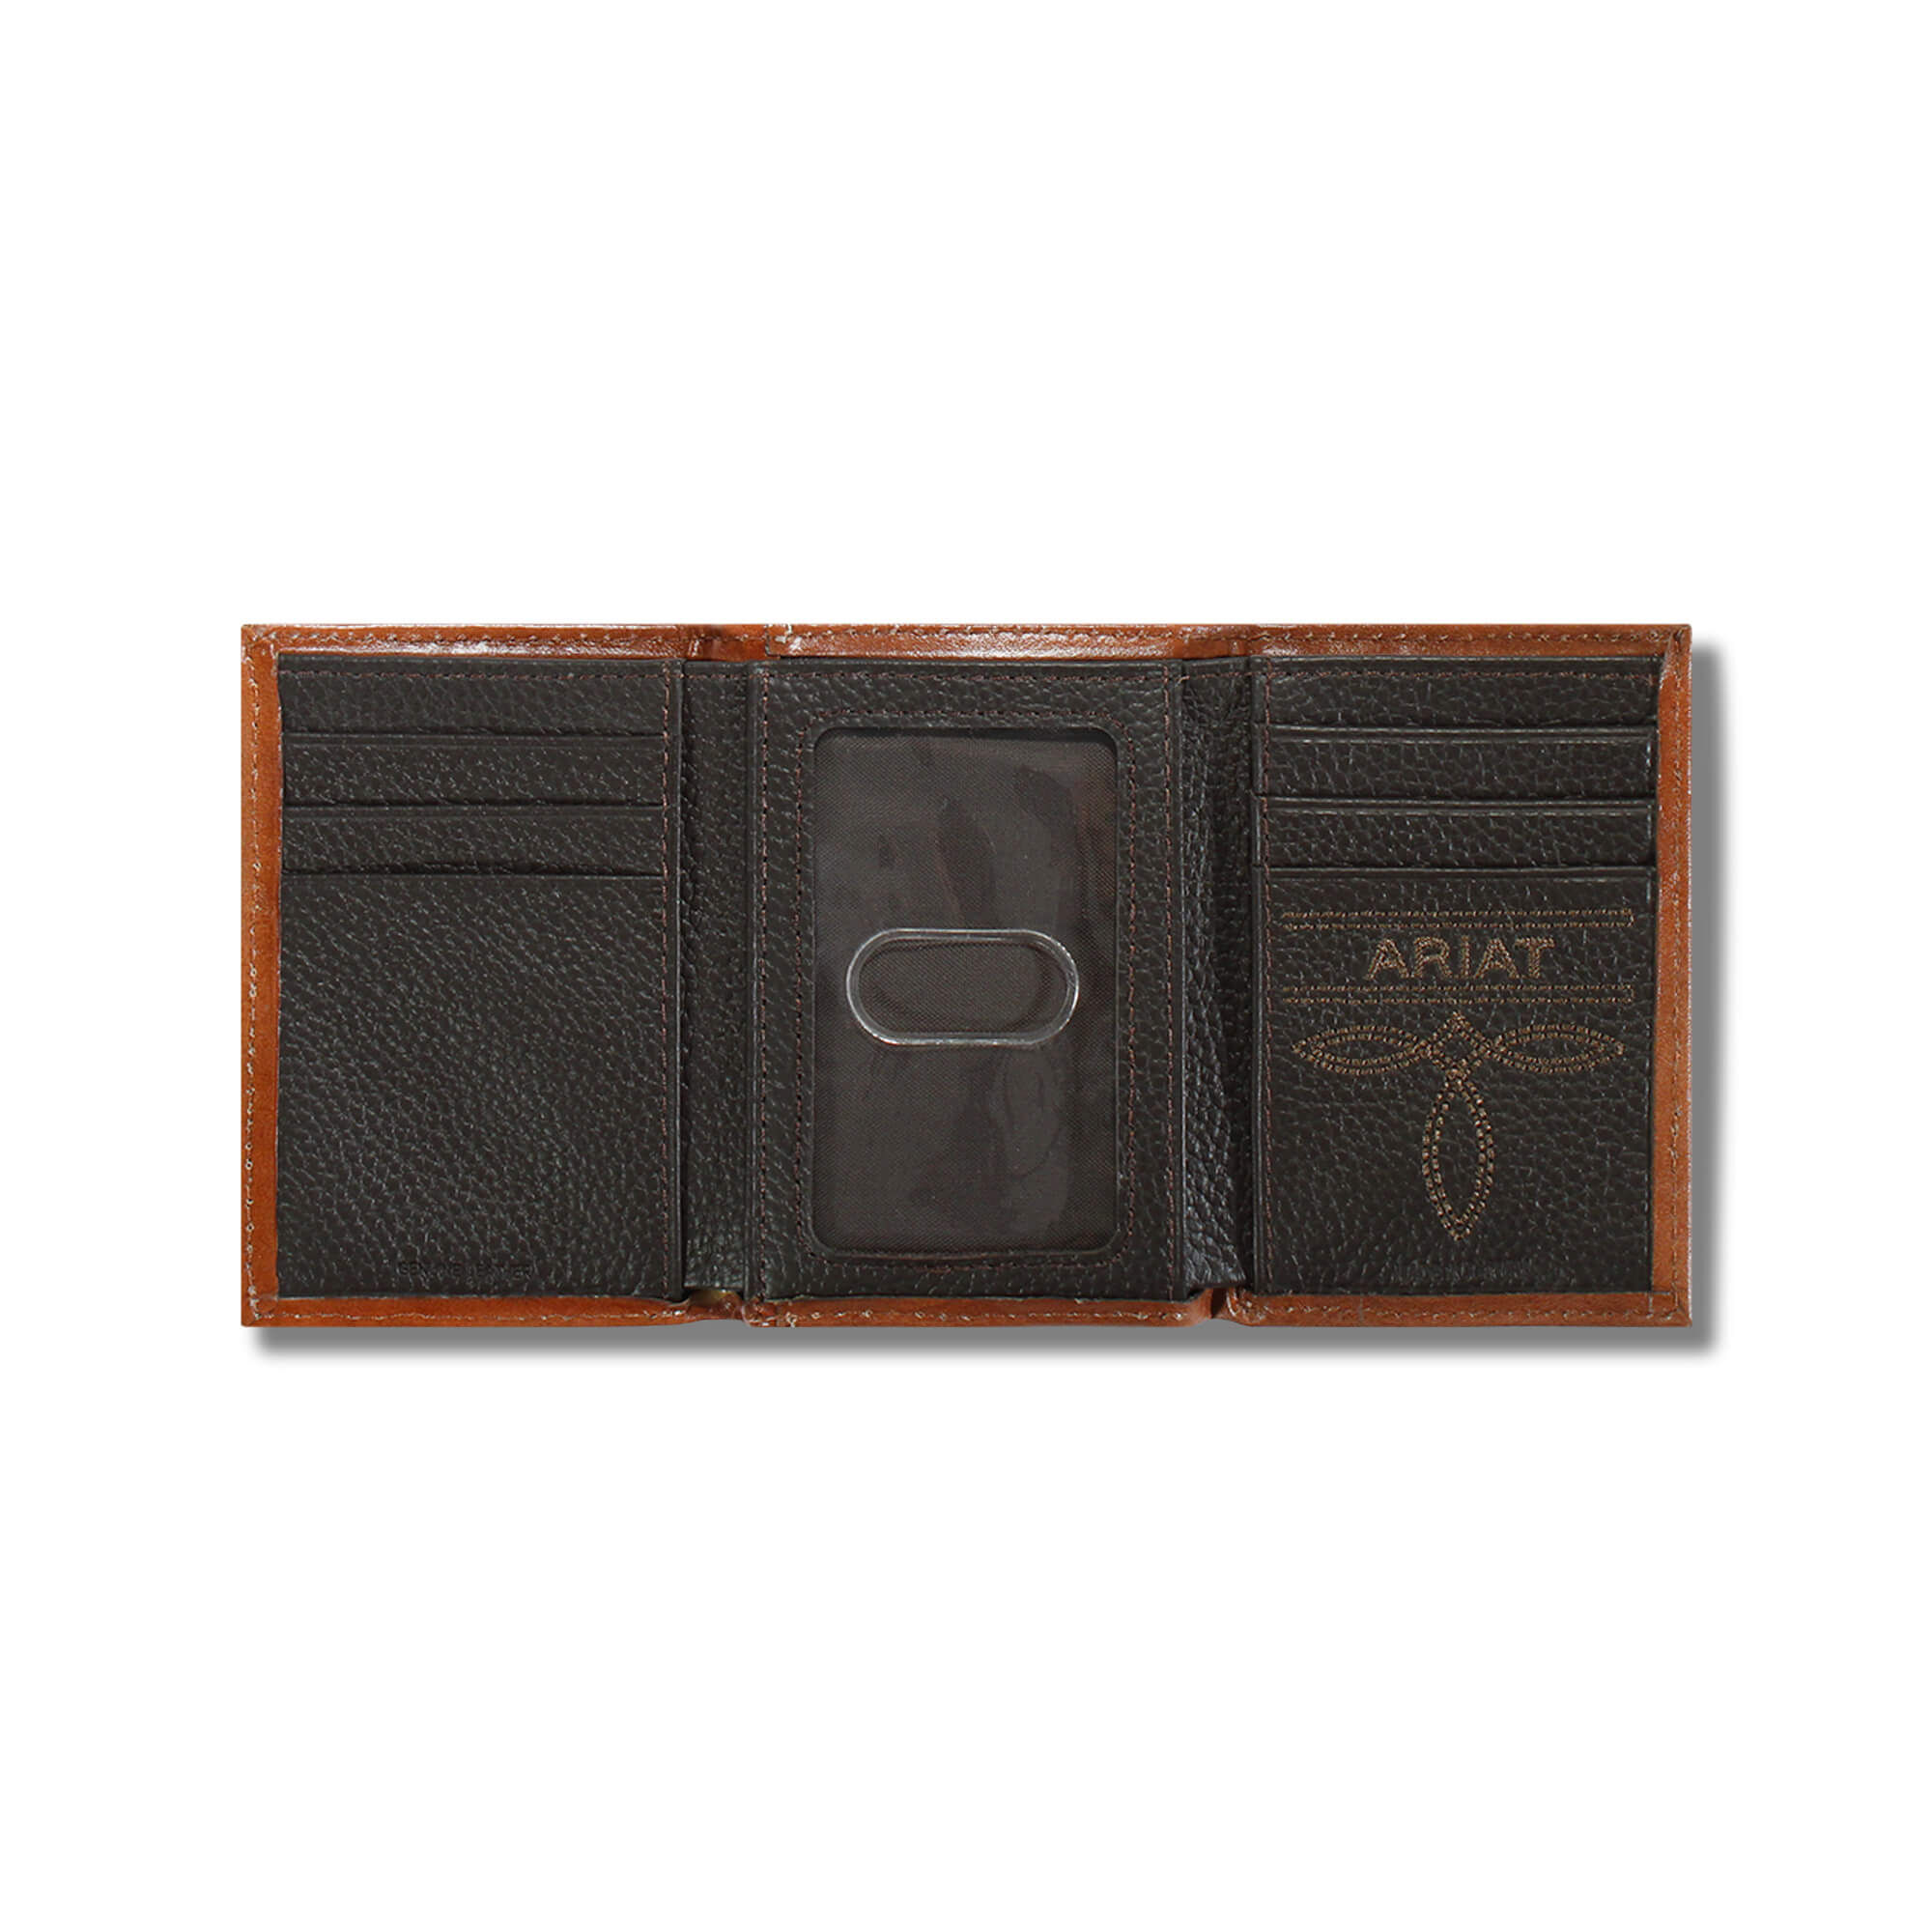 Lattice embossed bifold wallet